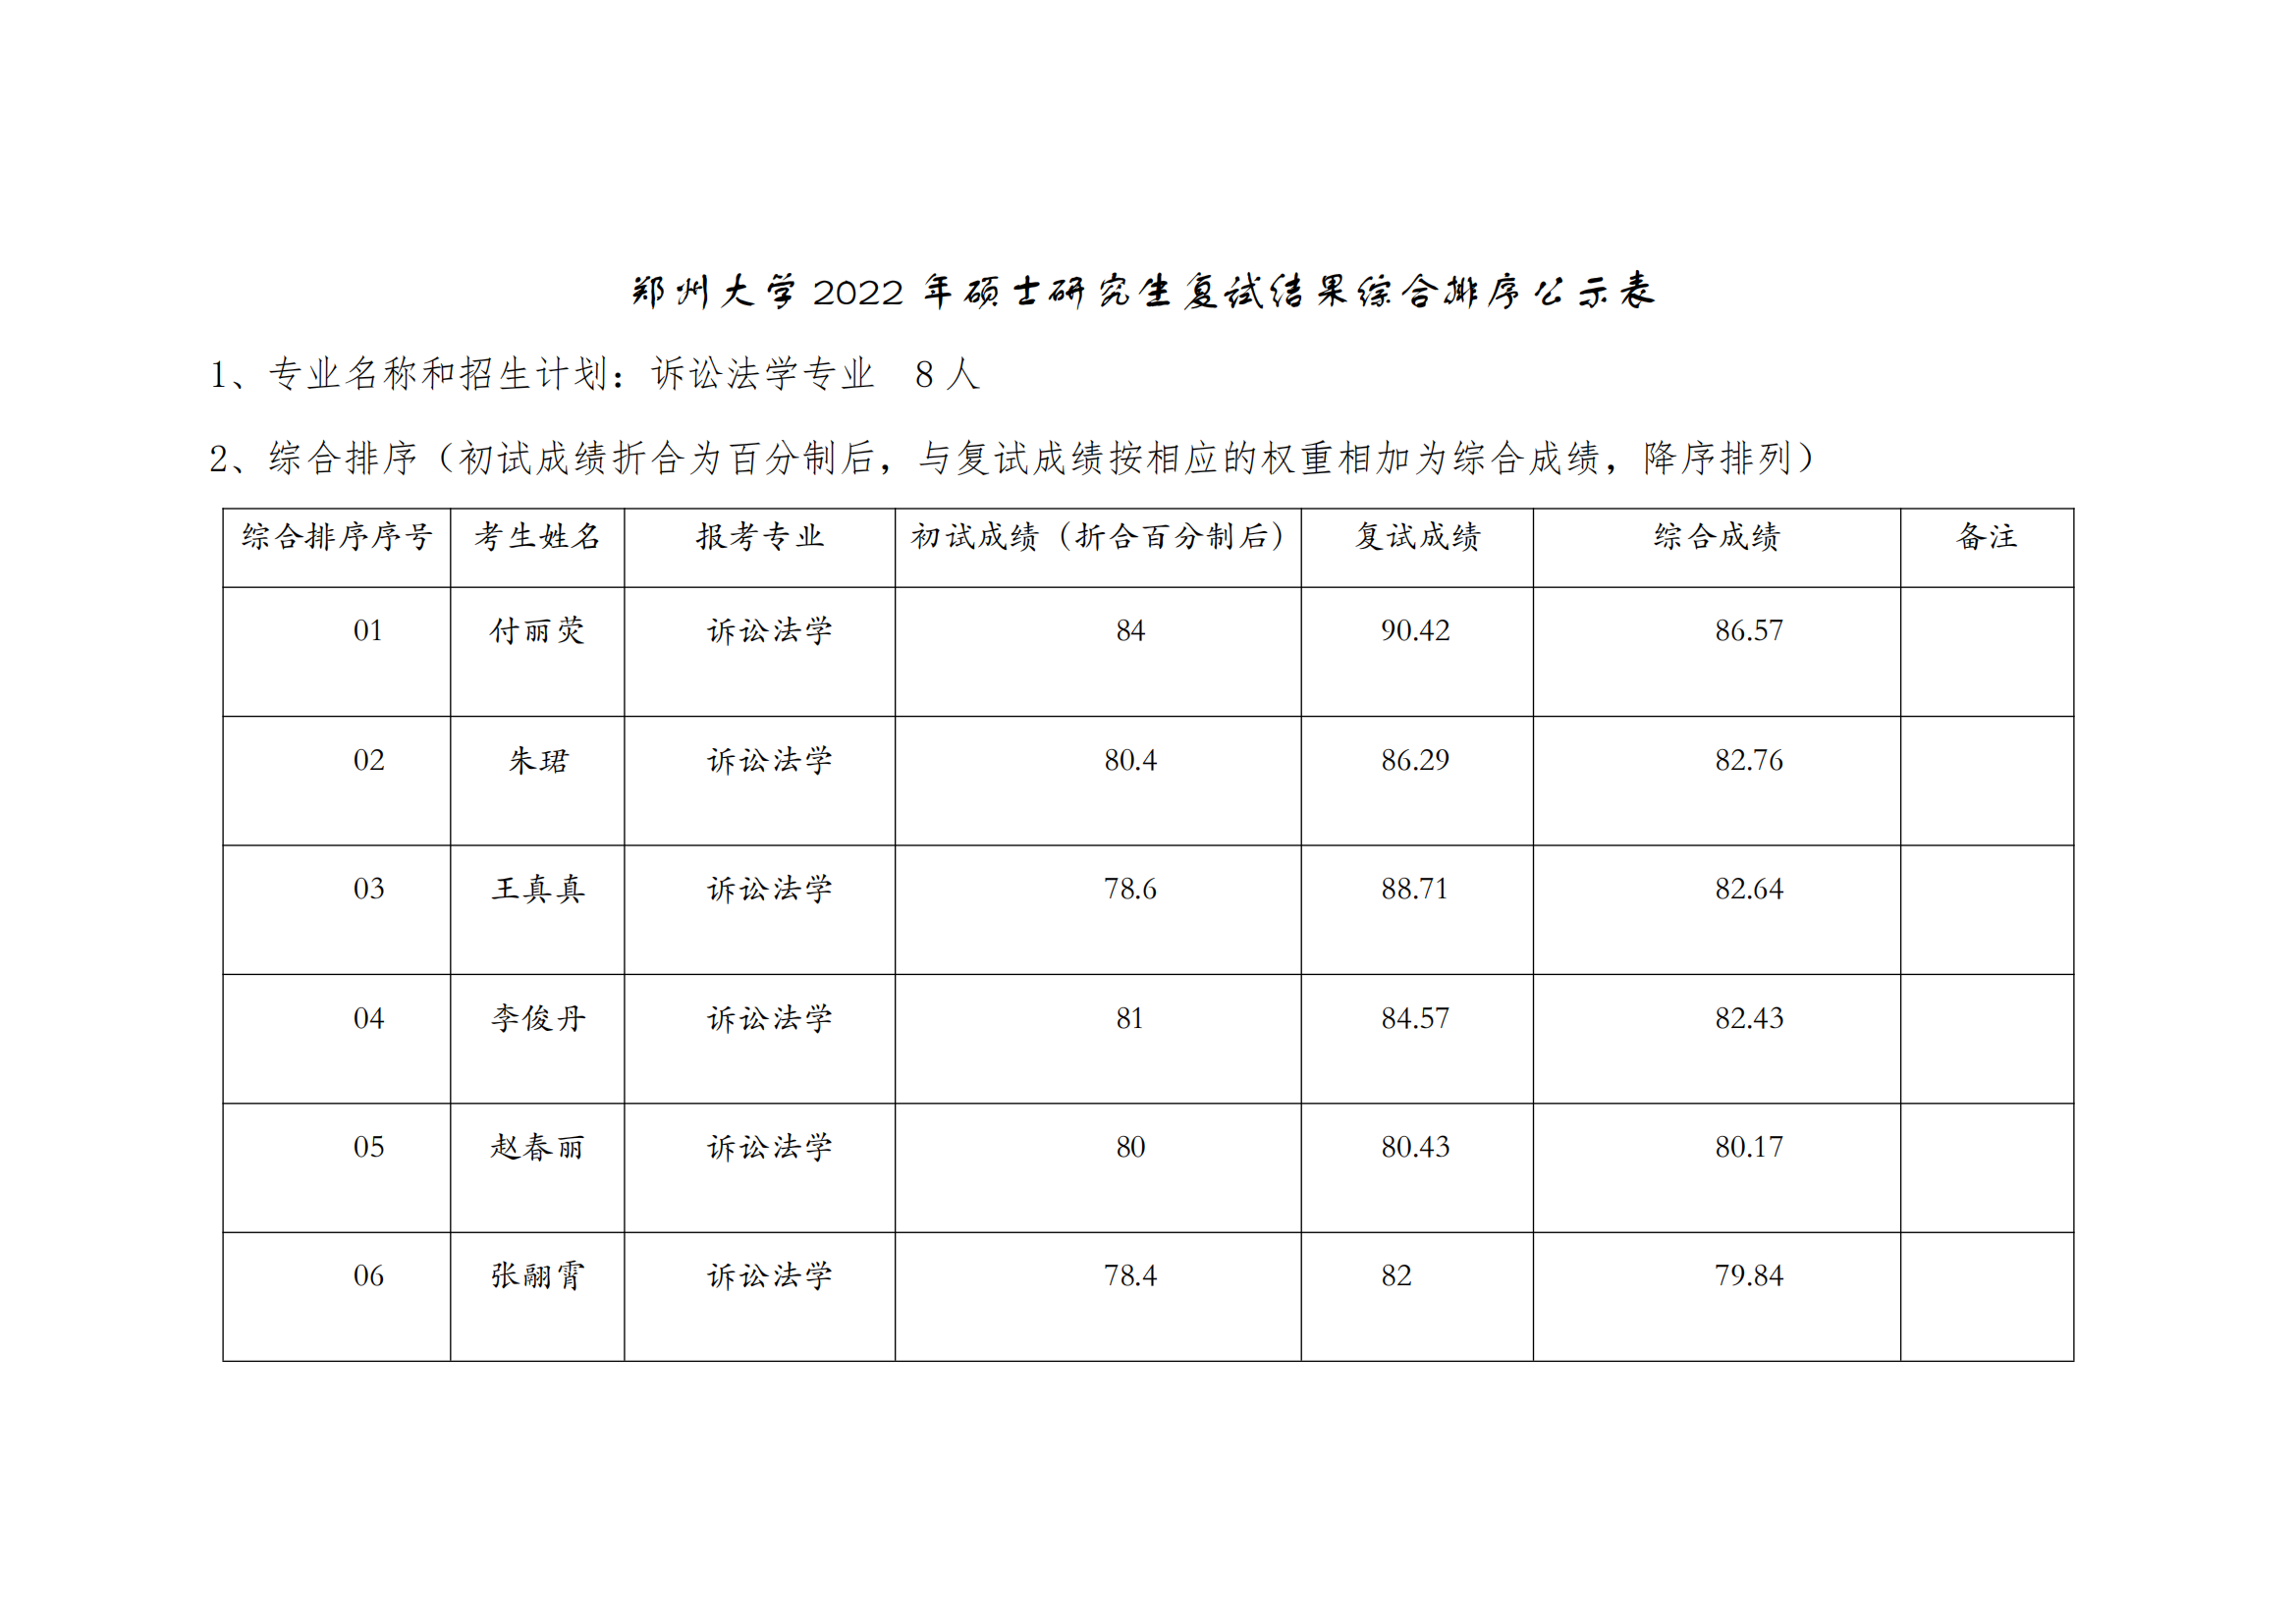 郑州大学2022年硕士研究生复试结果综合排序公示表【诉讼法】_00.png